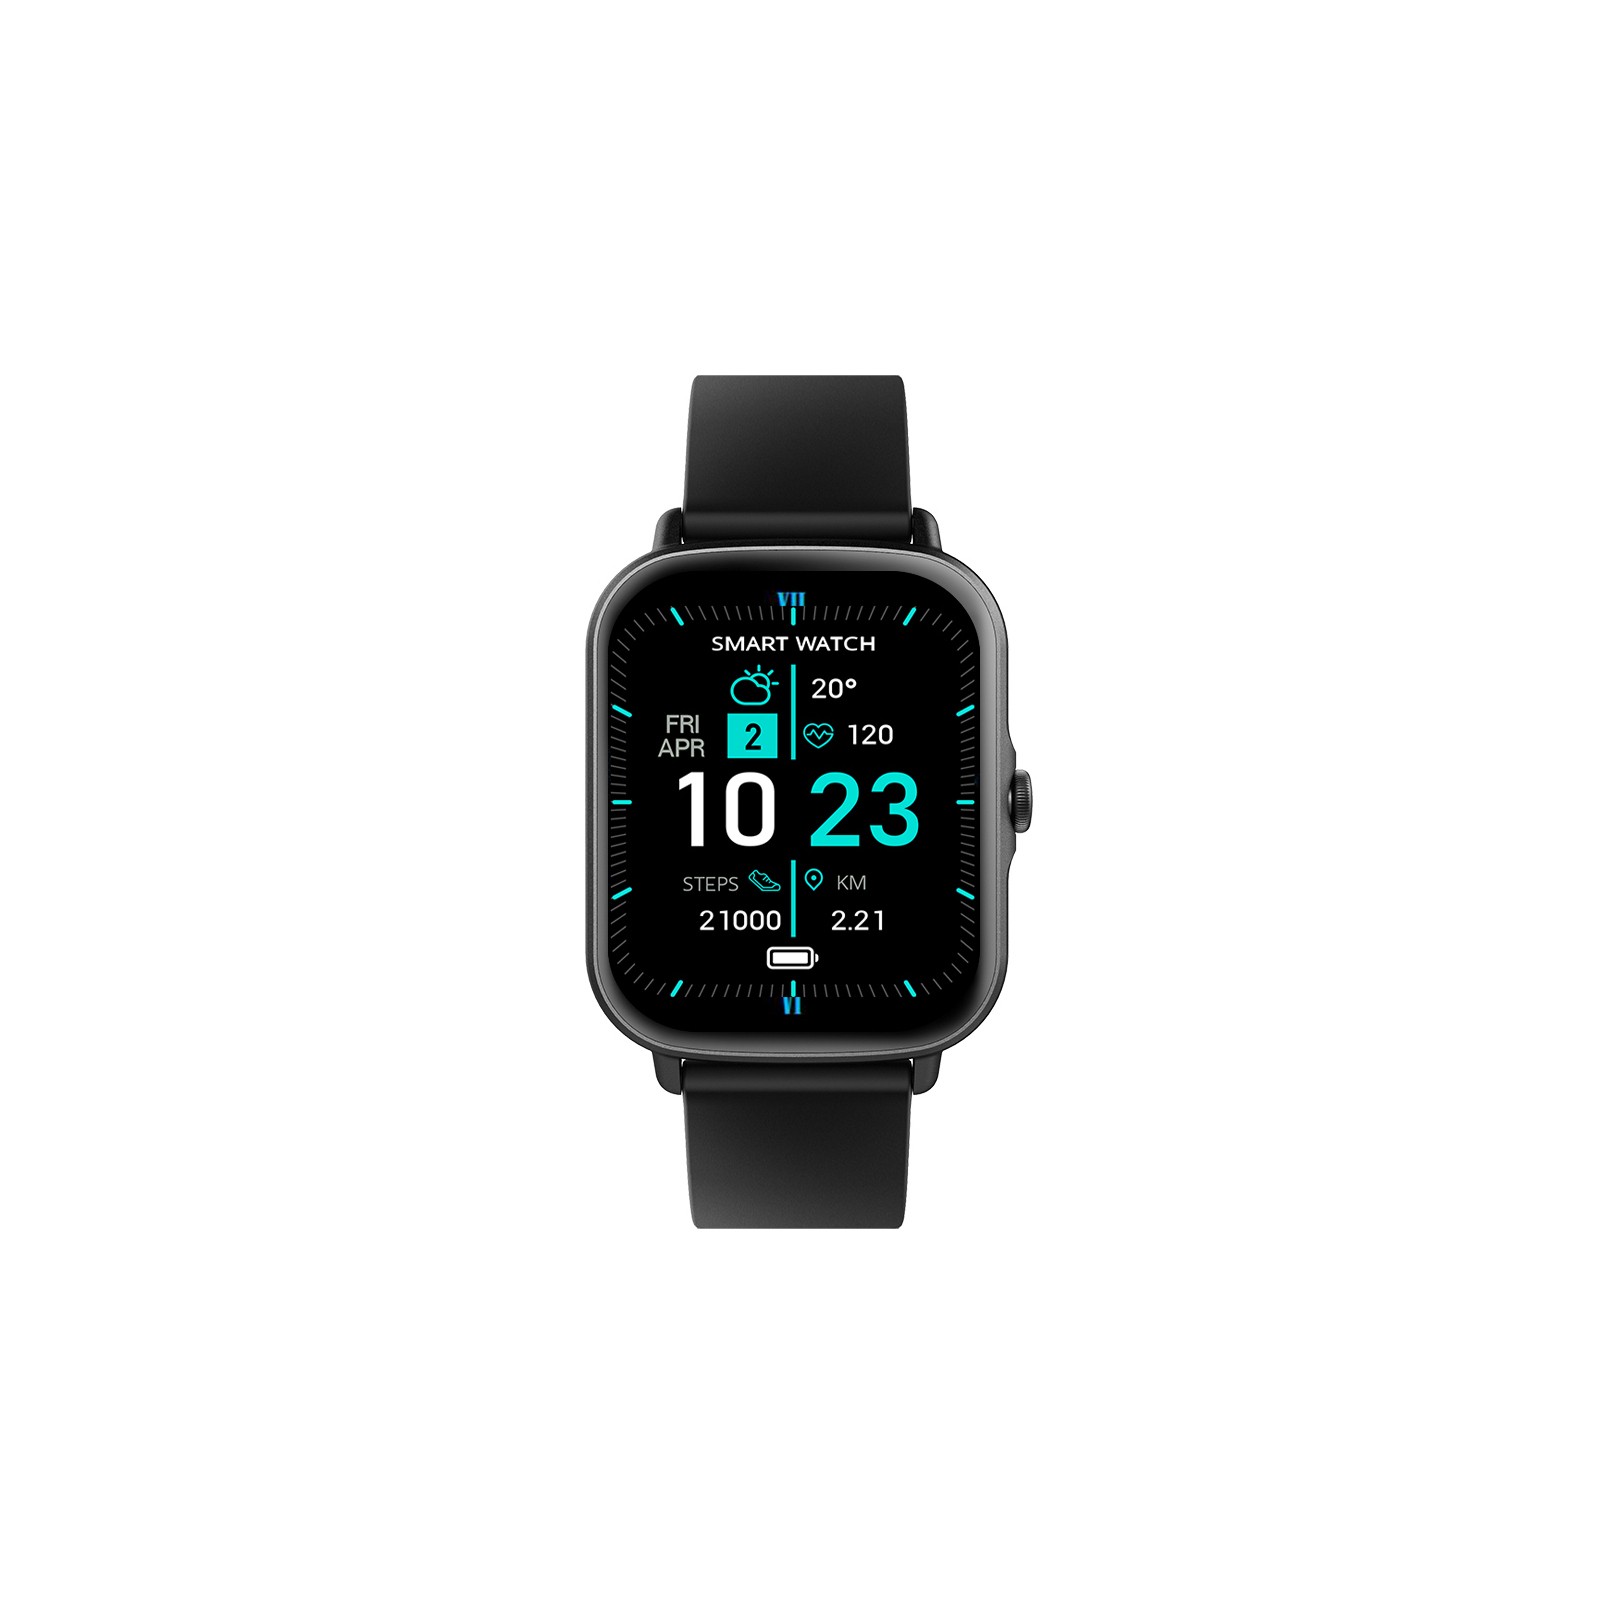 Смарт-часы Globex Smart Watch Me Pro (black) изображение 2